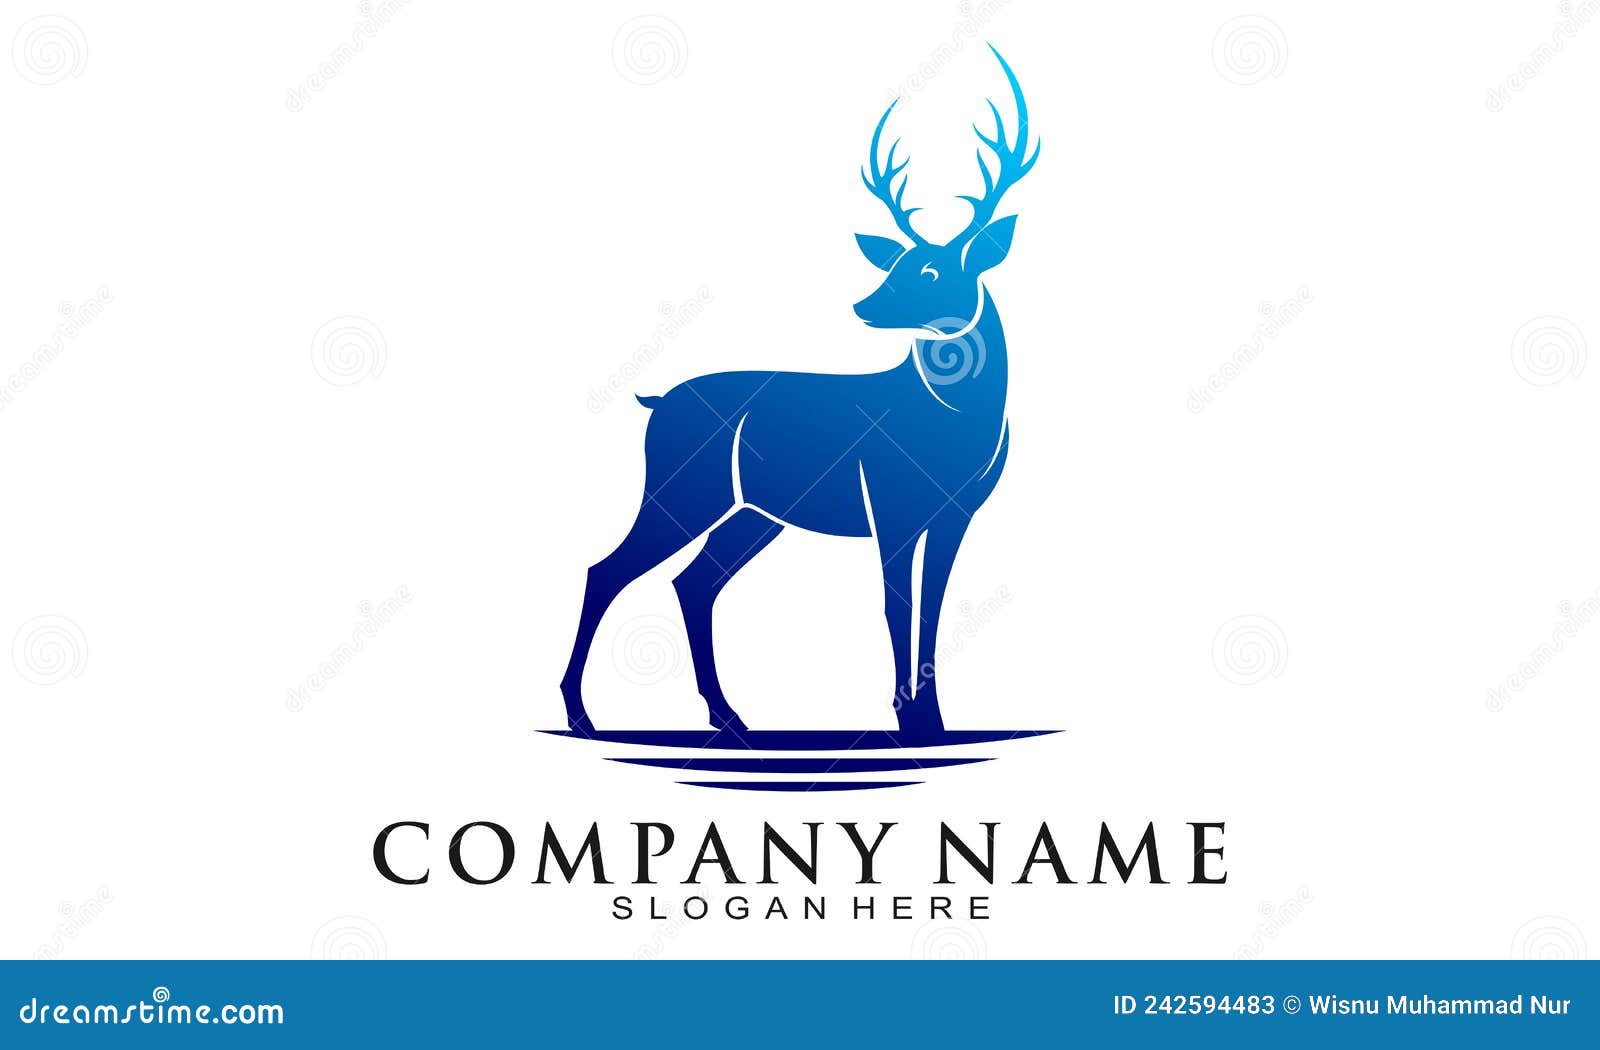 Elegant Blue Deer Logo Design Stock Vector - Illustration of antler,  drawing: 242594483